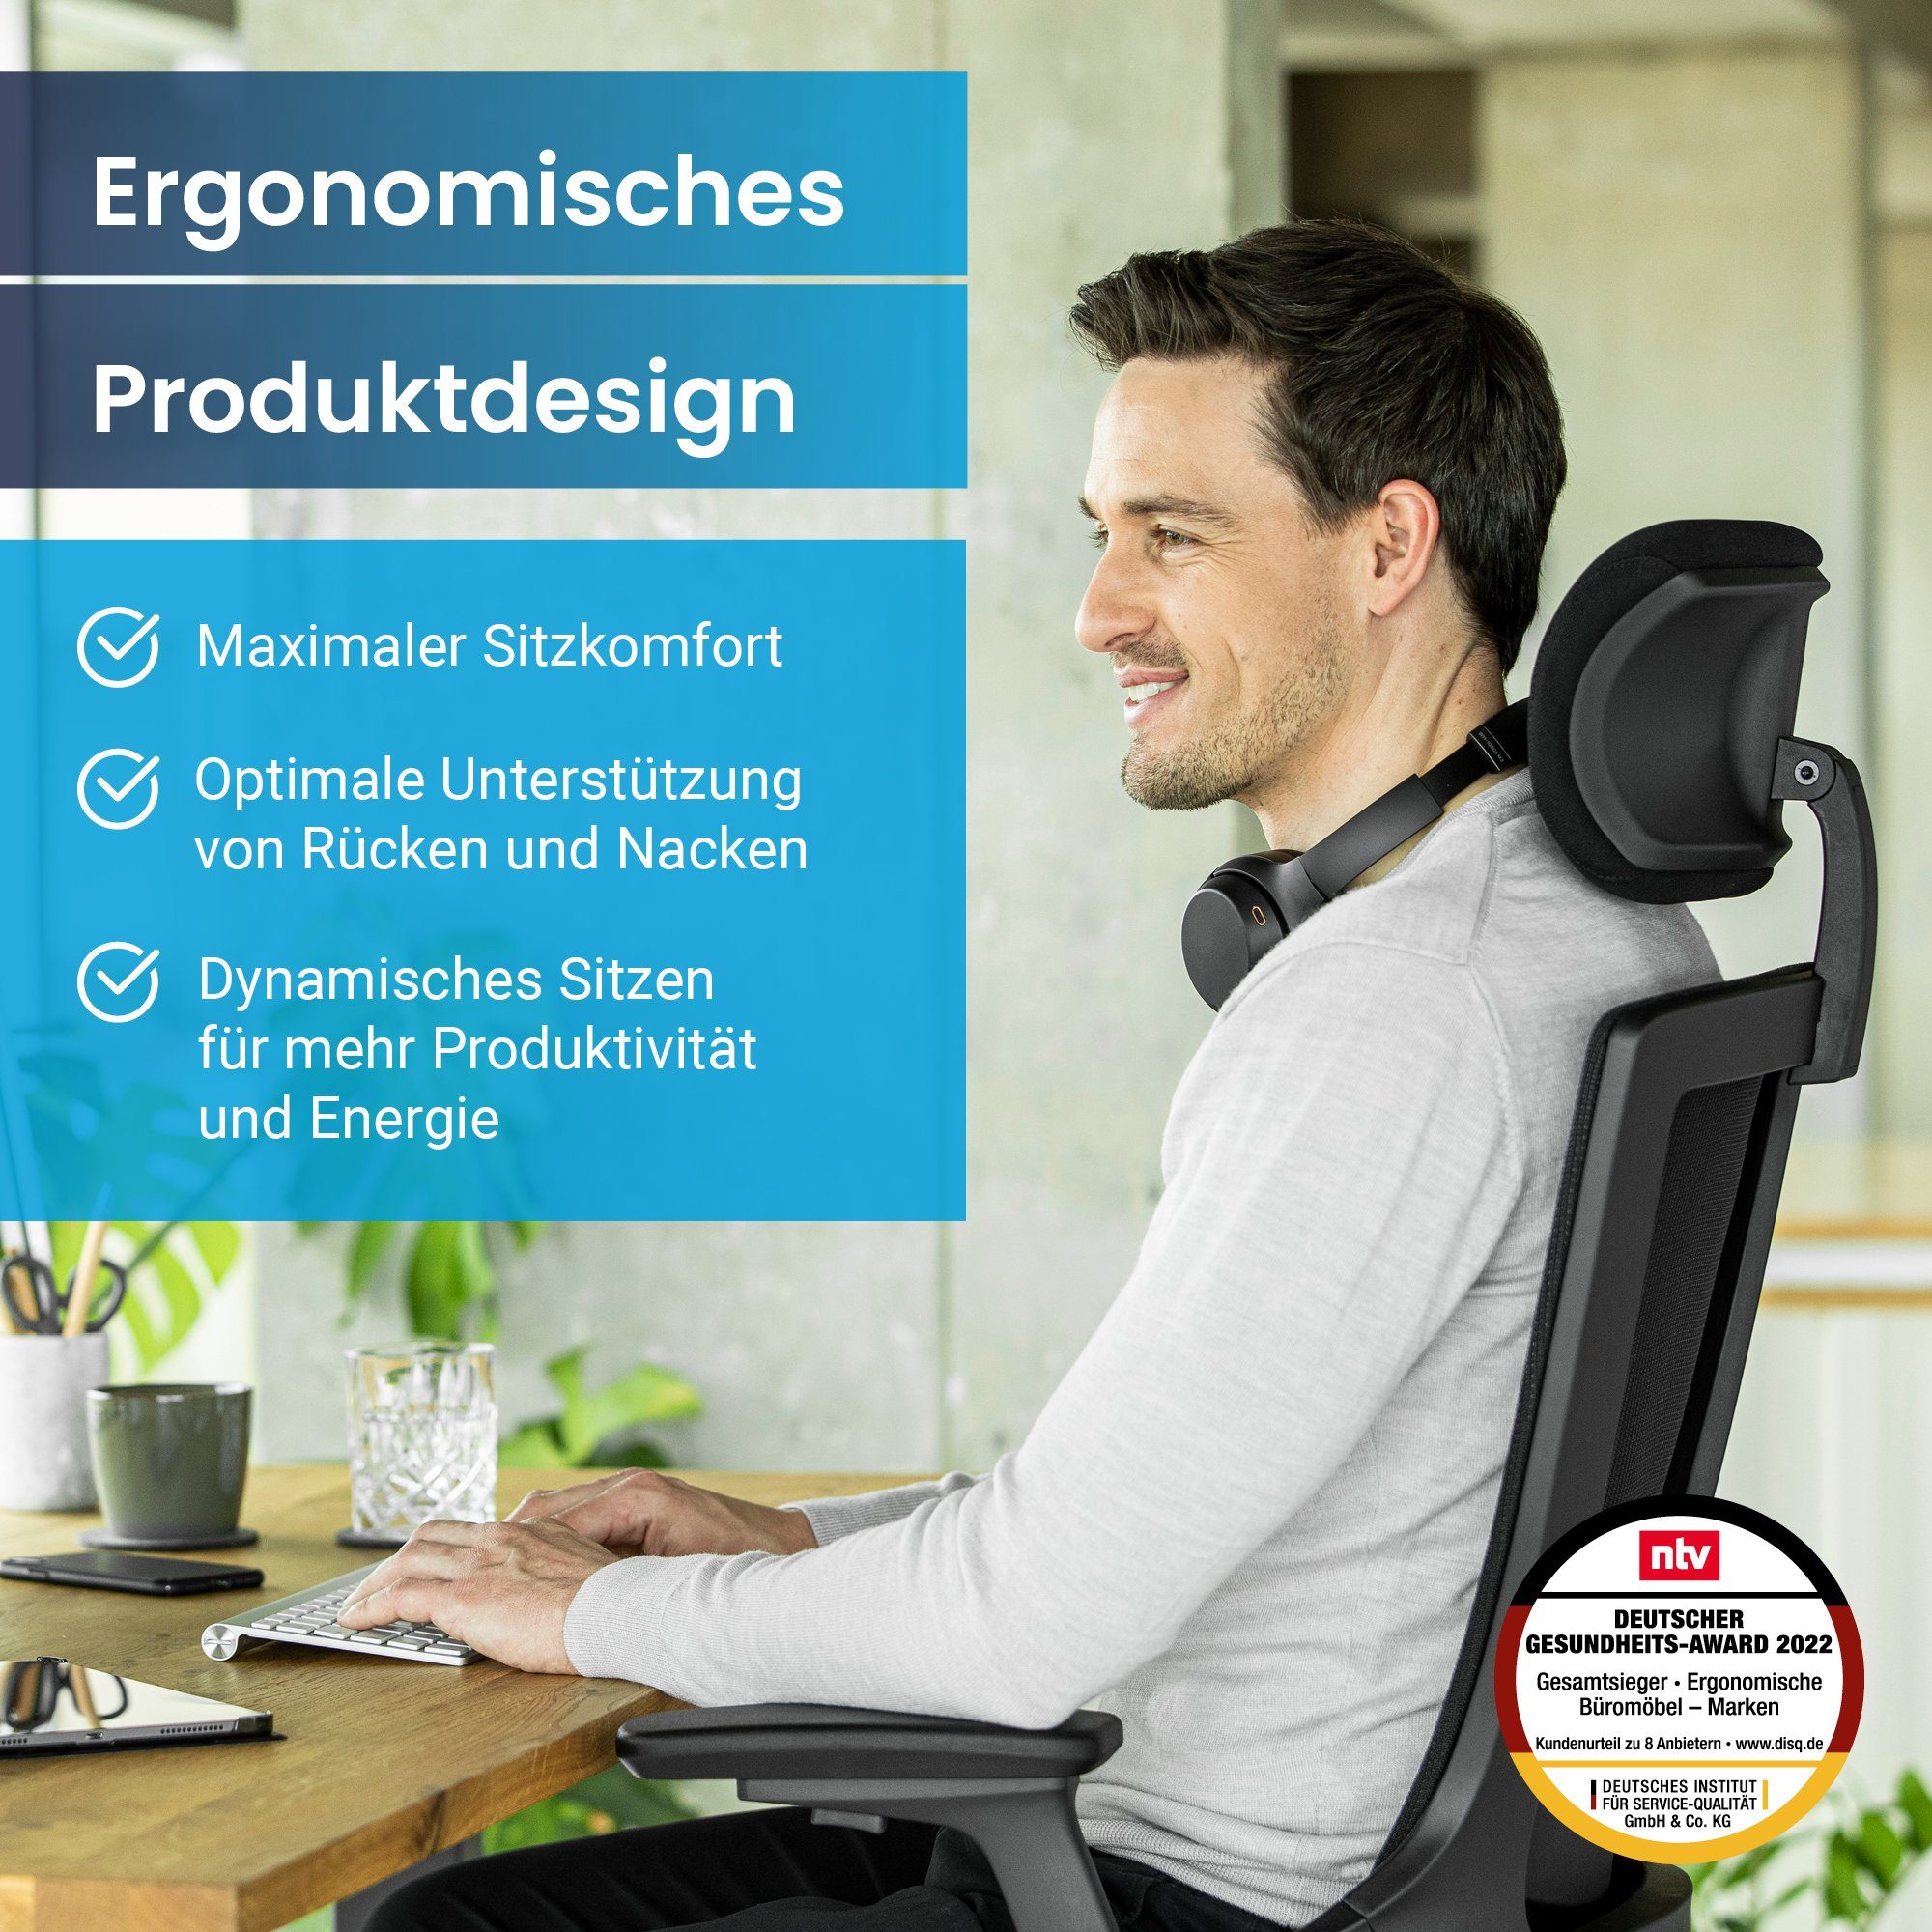 Bürostuhl Schreibtischstuhl verstellbarer mit & NextBack, Ergotopia Armlehnen 3D Drehstuhl Kopfstütze ergonomischer